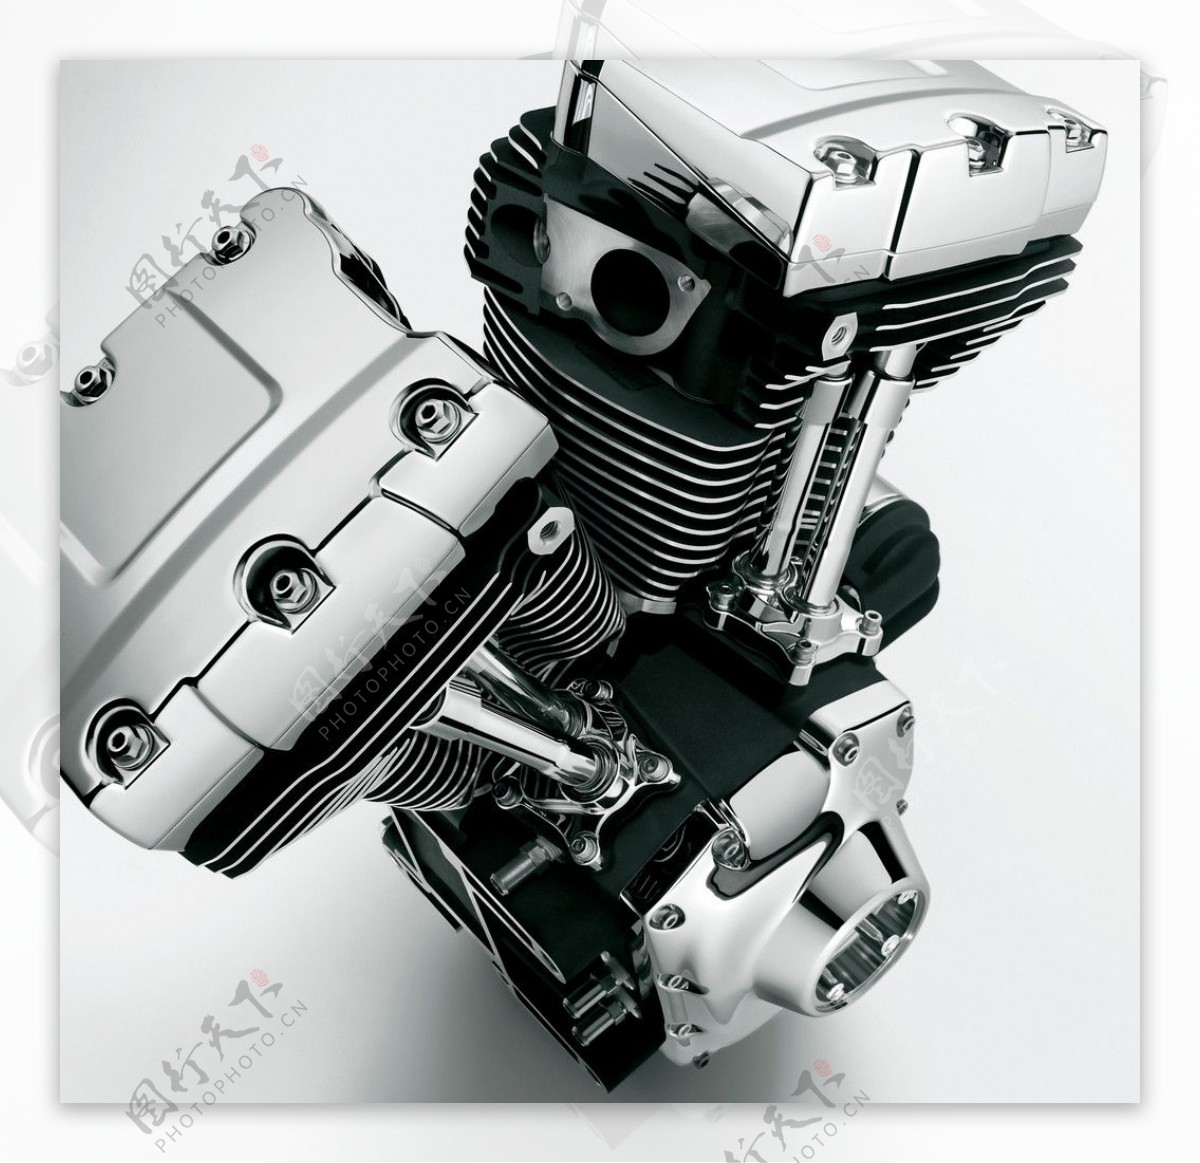 哈雷摩托引擎图片